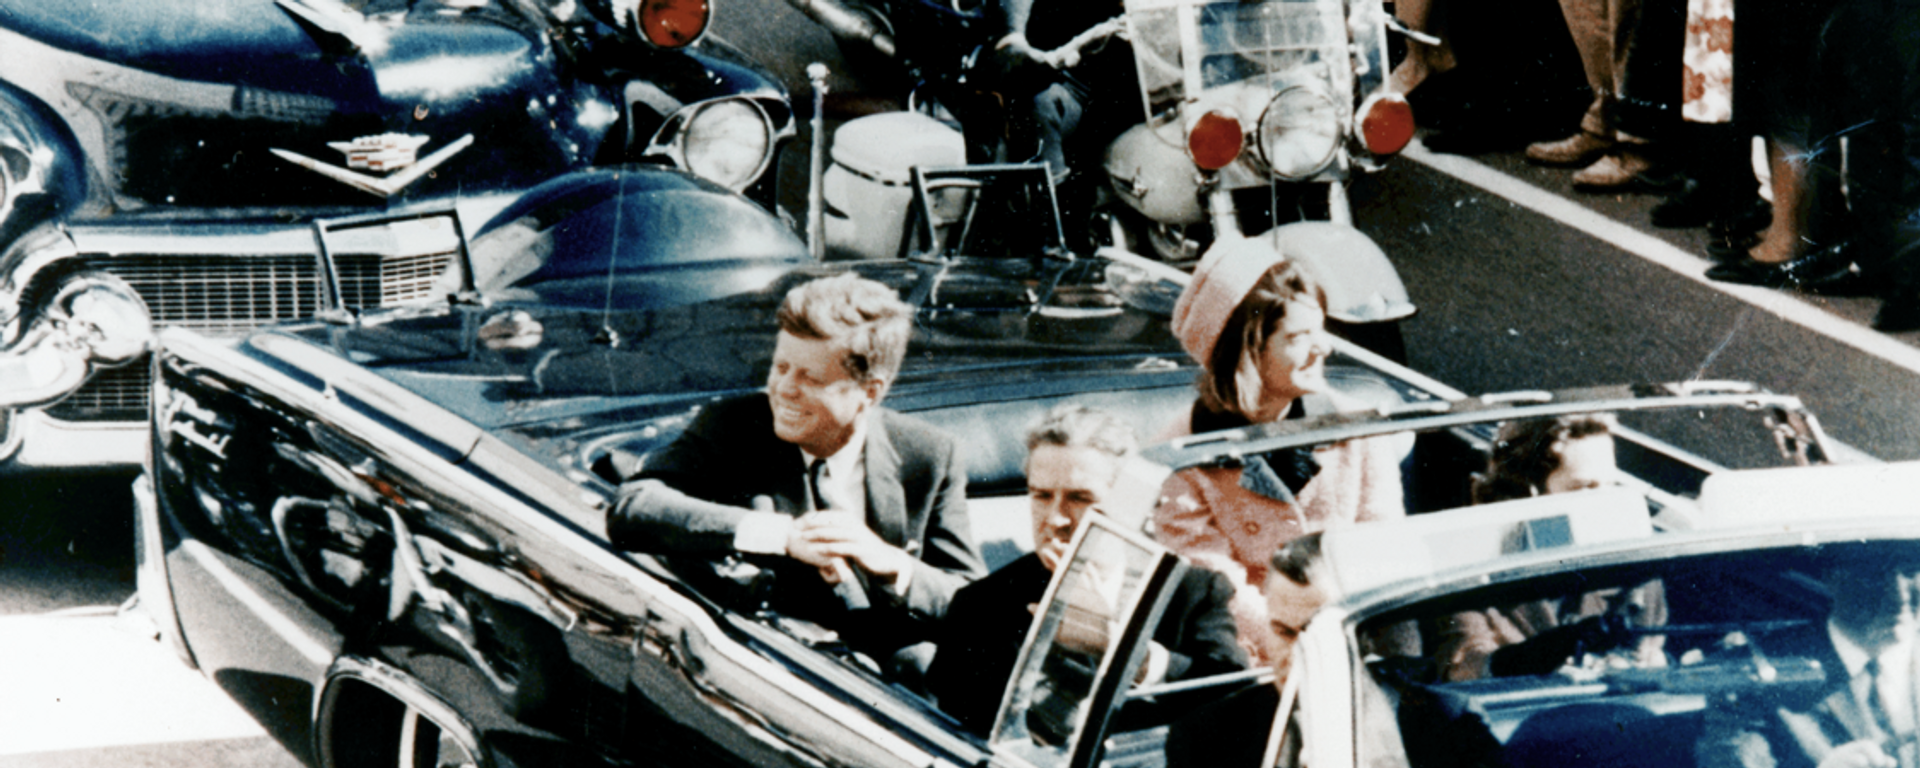 Председник САД Џон Ф. Кенеди у председничкој лимузини у Даласу 1963. неколико минута пре атентата. У возилу су и прва дама Џеки Кенеди, говернер Тексаса Џон Конали и његова жена Нели. - Sputnik Србија, 1920, 22.11.2020